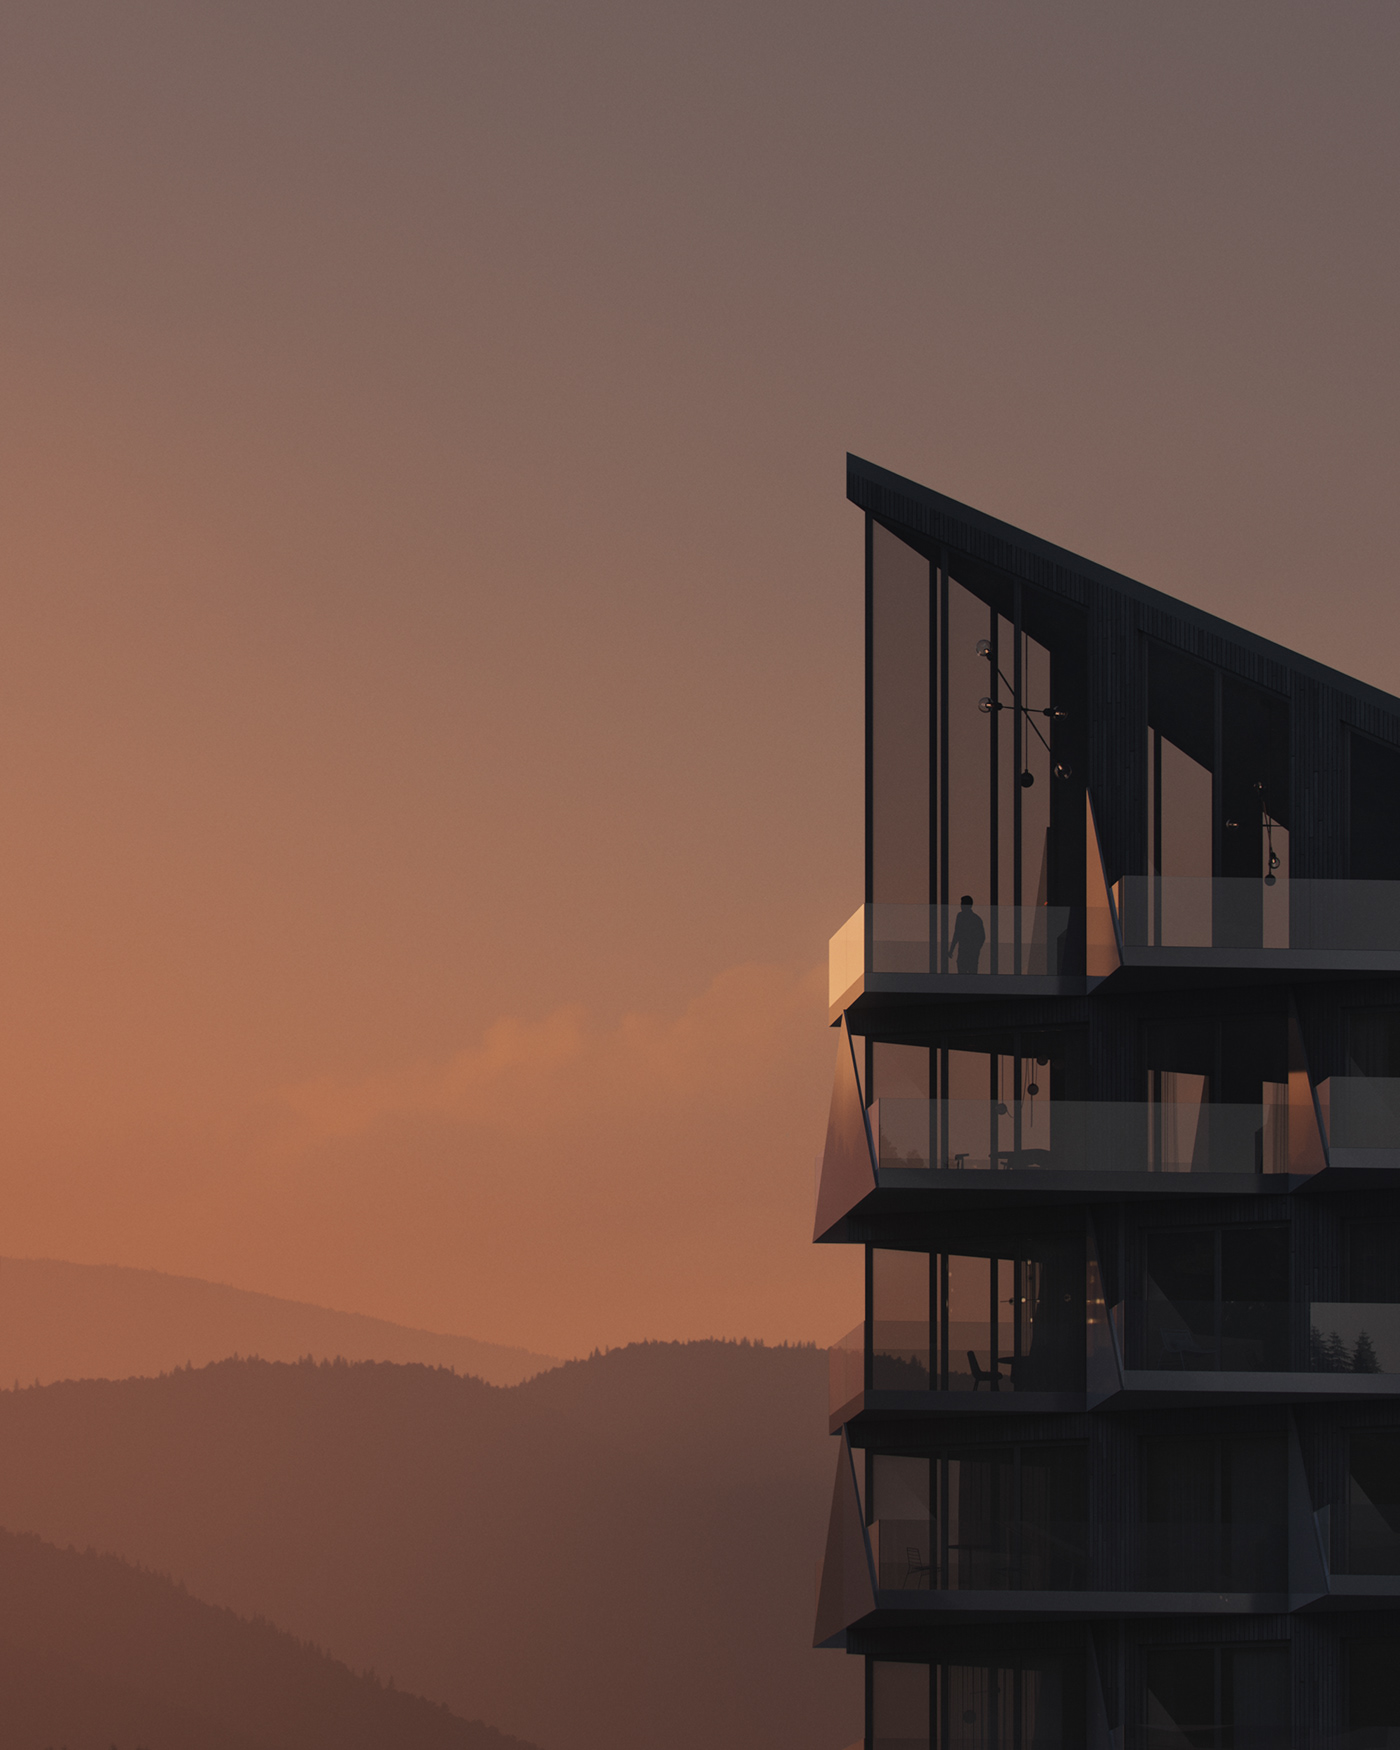 3ds max architecture Render visualization 3D archviz exterior corona mountains Landscape